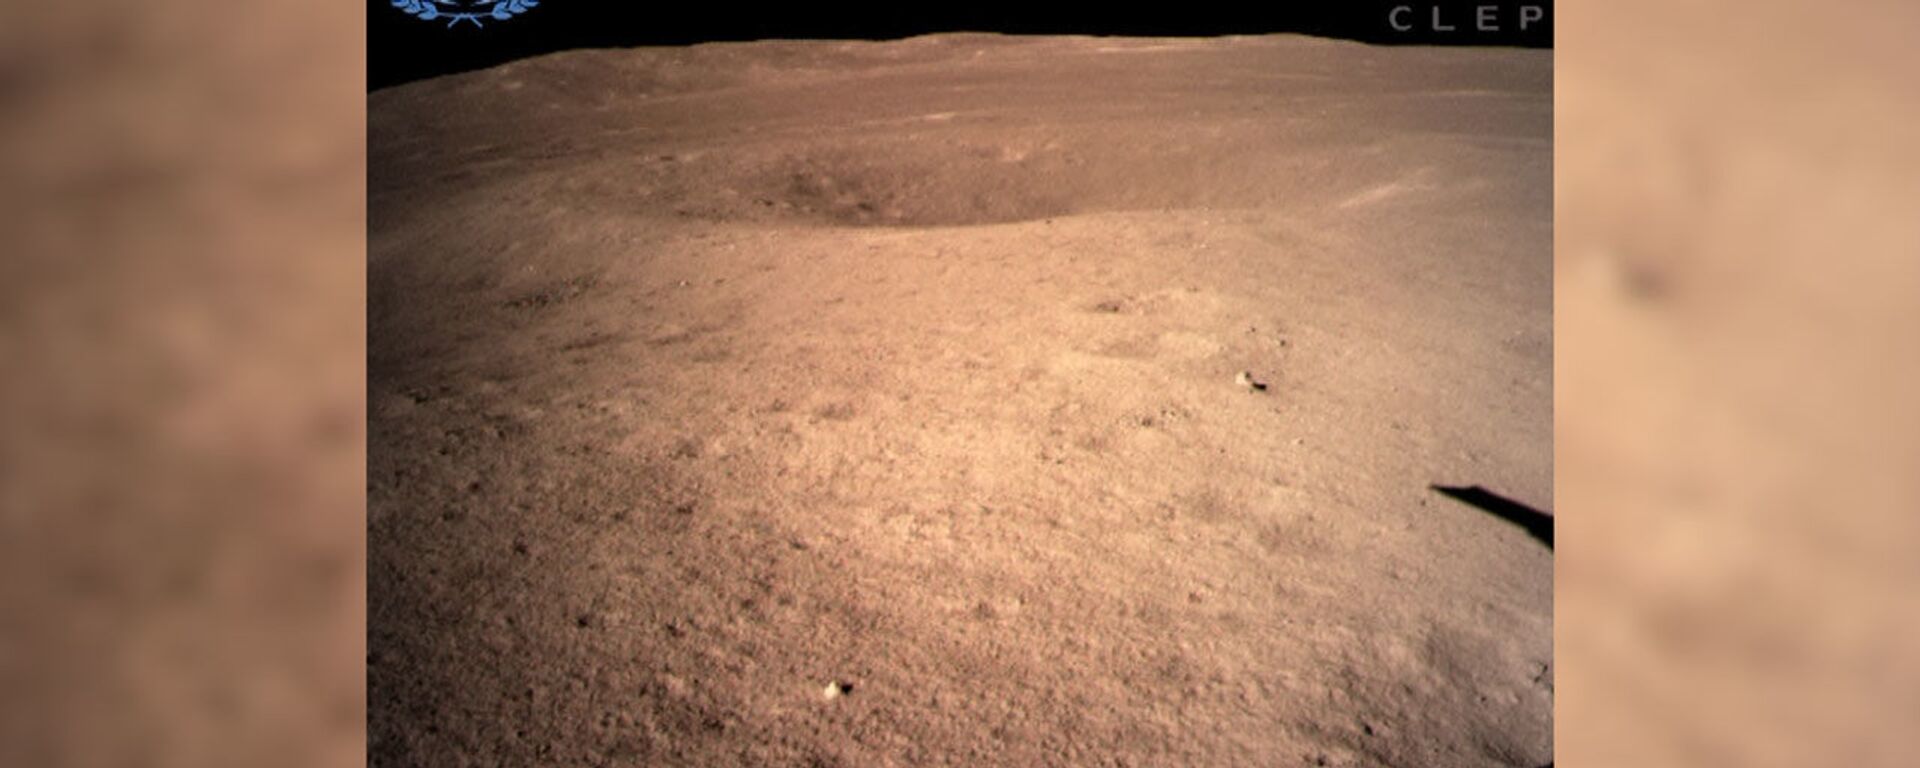 Чанъэ-4 сделал первый снимок обратной стороны Луны - Sputnik Latvija, 1920, 04.01.2019